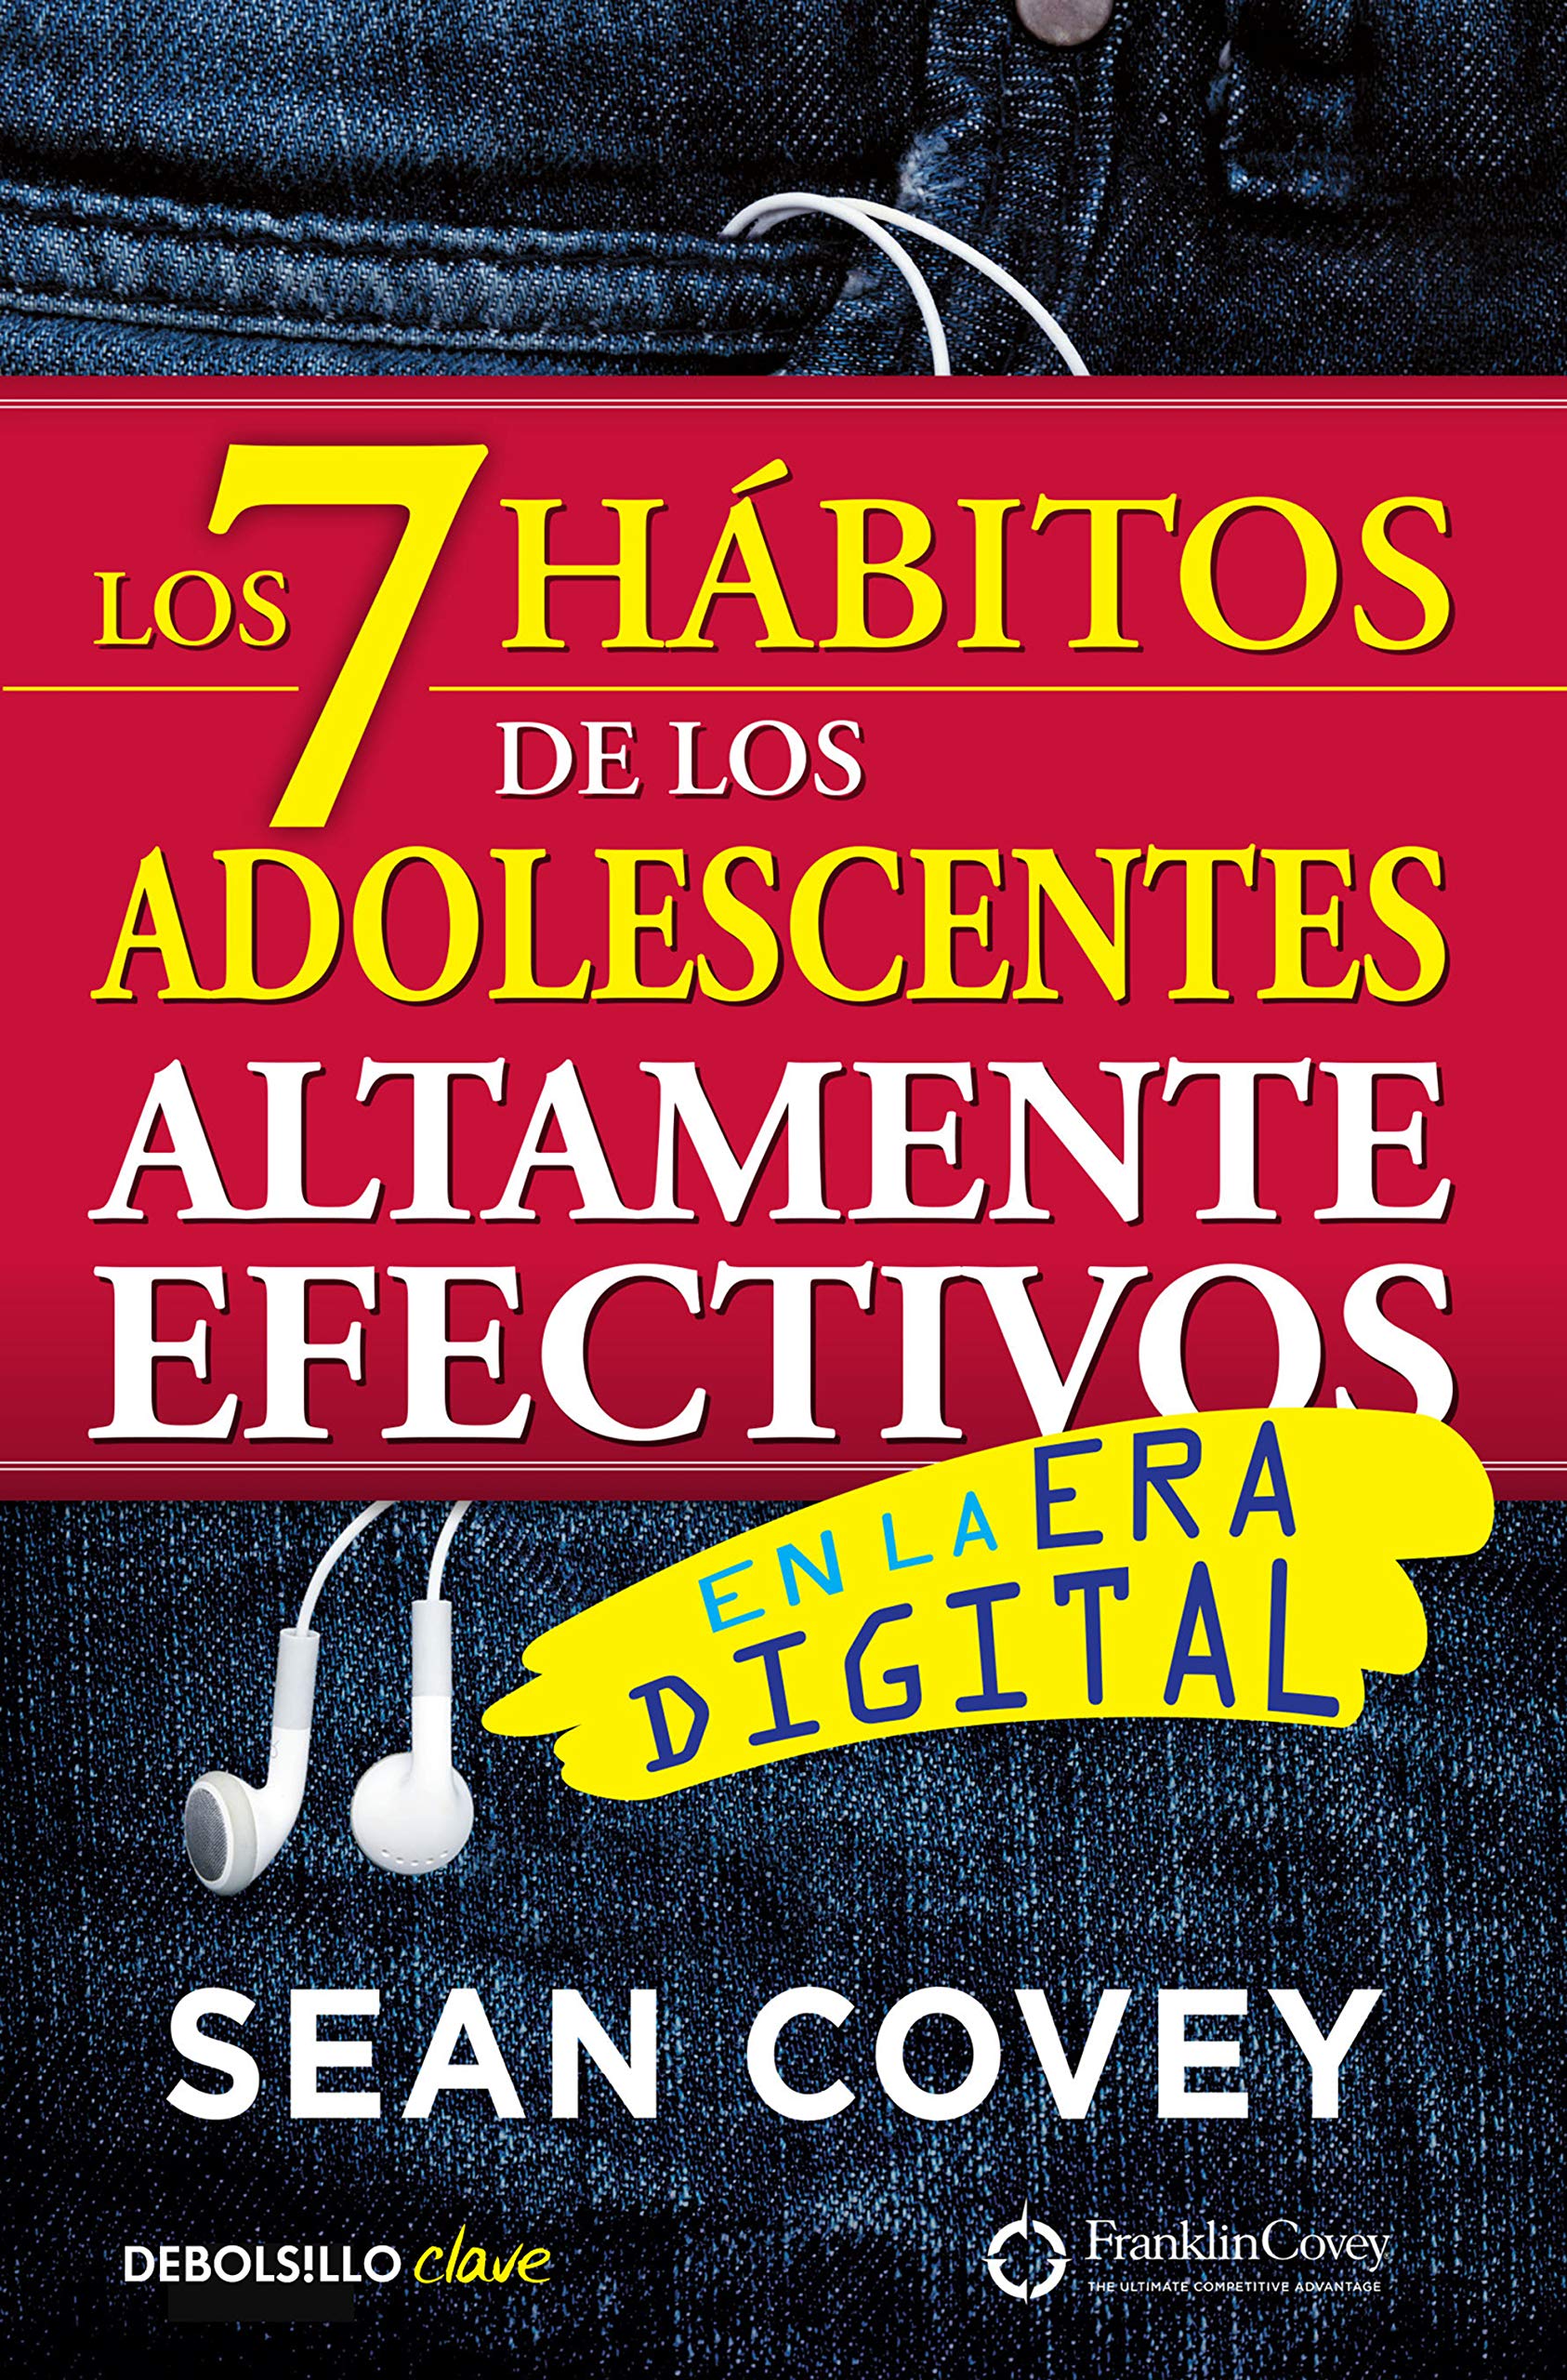 Los 7 hábitos de los adolescentes altamente efectivos / The 7 Habits of Highly E ffective Teens (Spanish Edition)